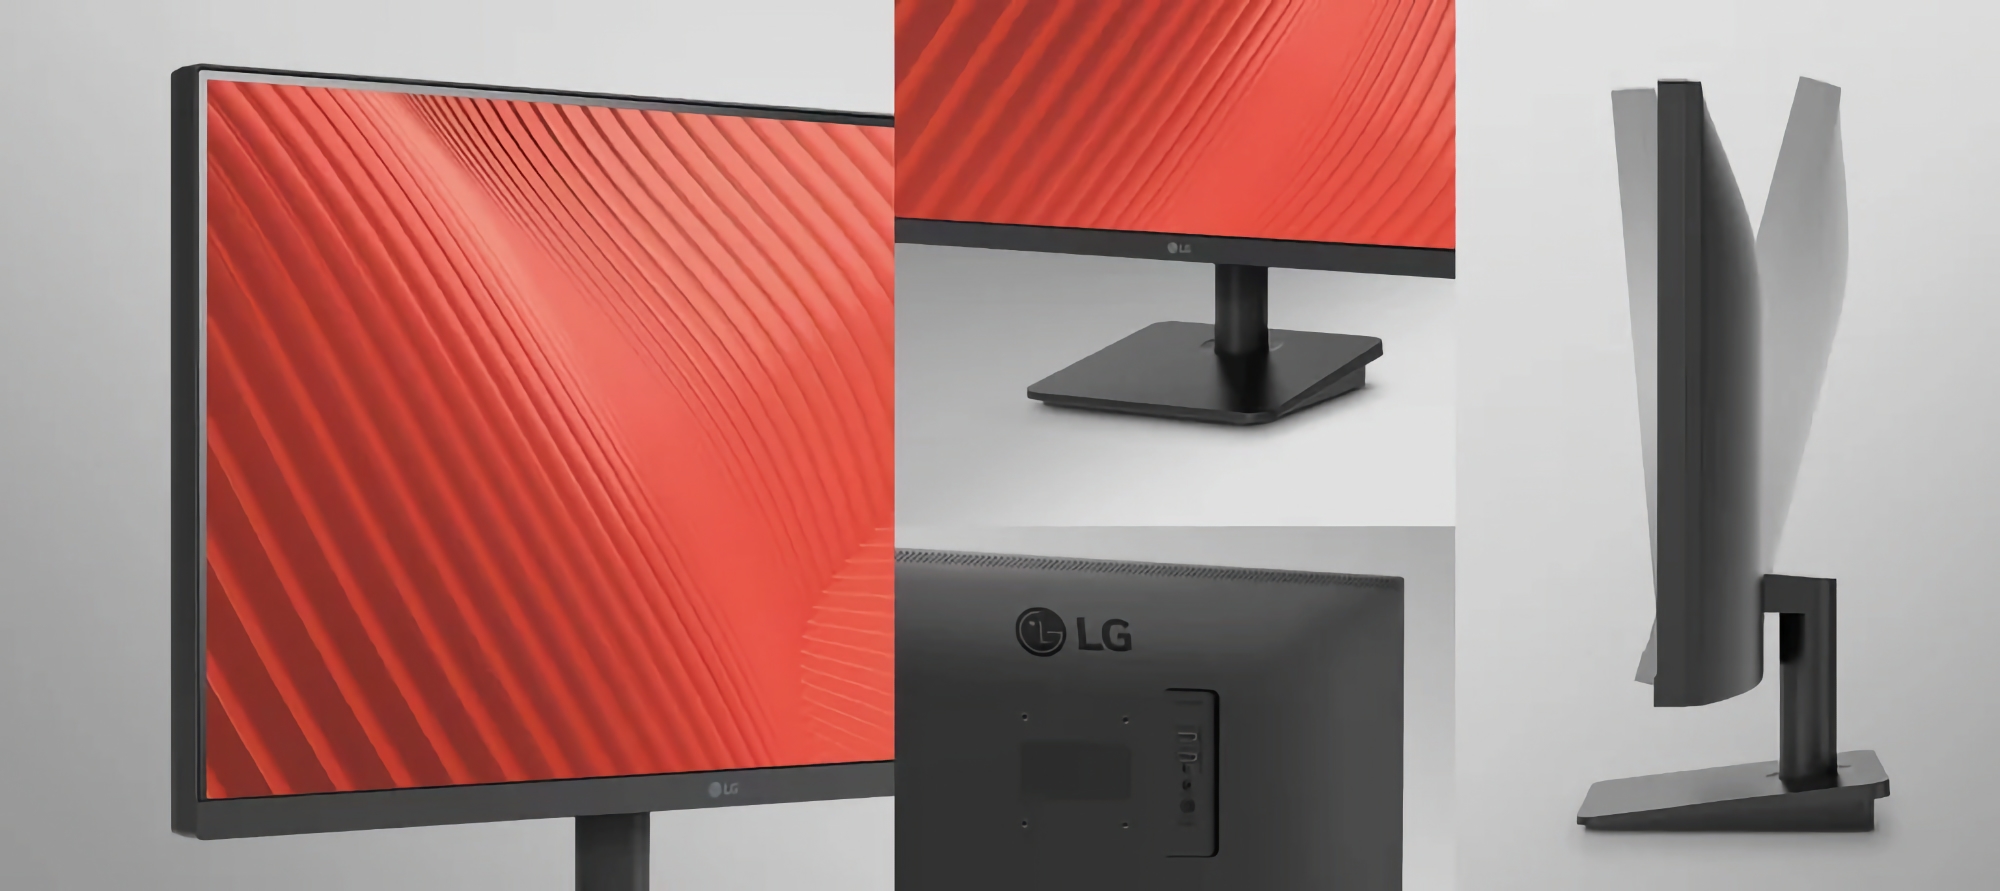 LG представила 25MS500: монітор з IPS-матрицею, роздільною здатністю 1080p і підтримкою 100 Гц за $87